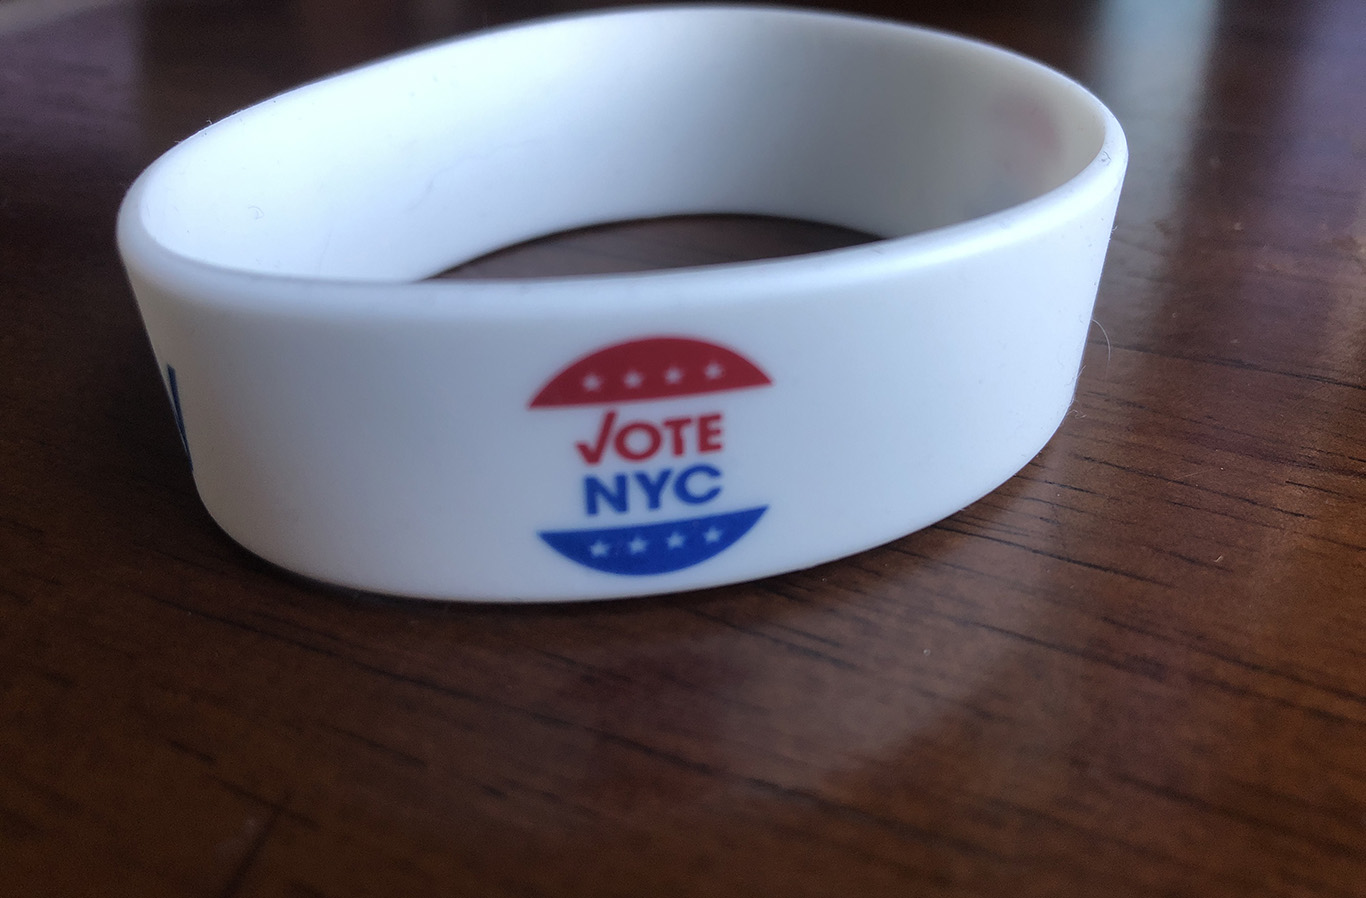 Bracelete dado ao eleitor no posto de votação em NY (Foto: Sandra Colicino)